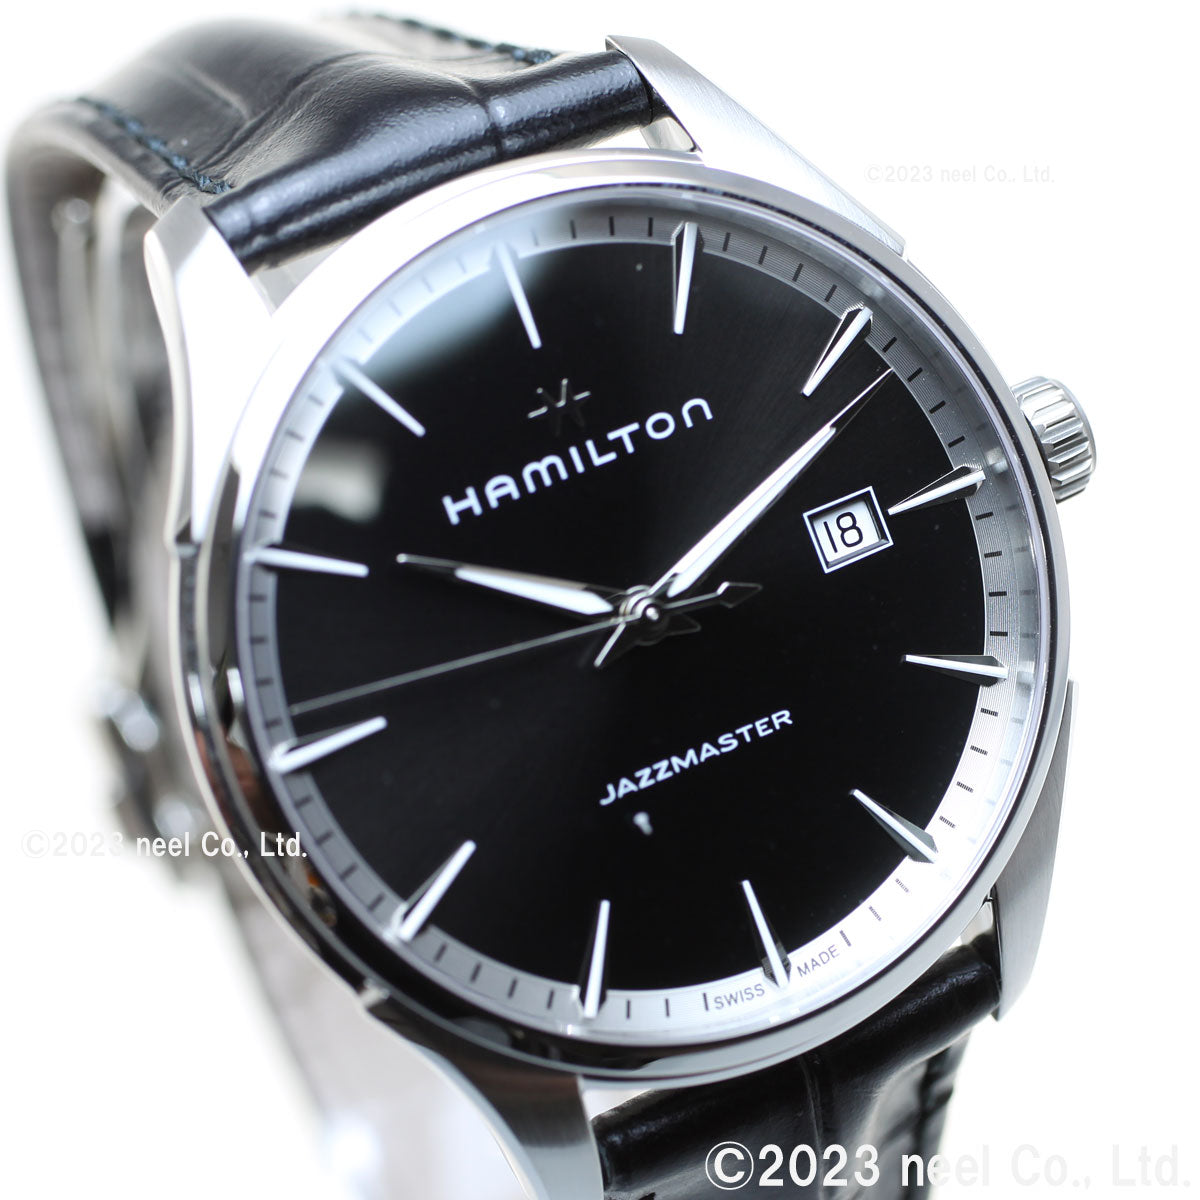 ハミルトン ジャズマスタージェント H324510ハミルトン - 腕時計(アナログ)